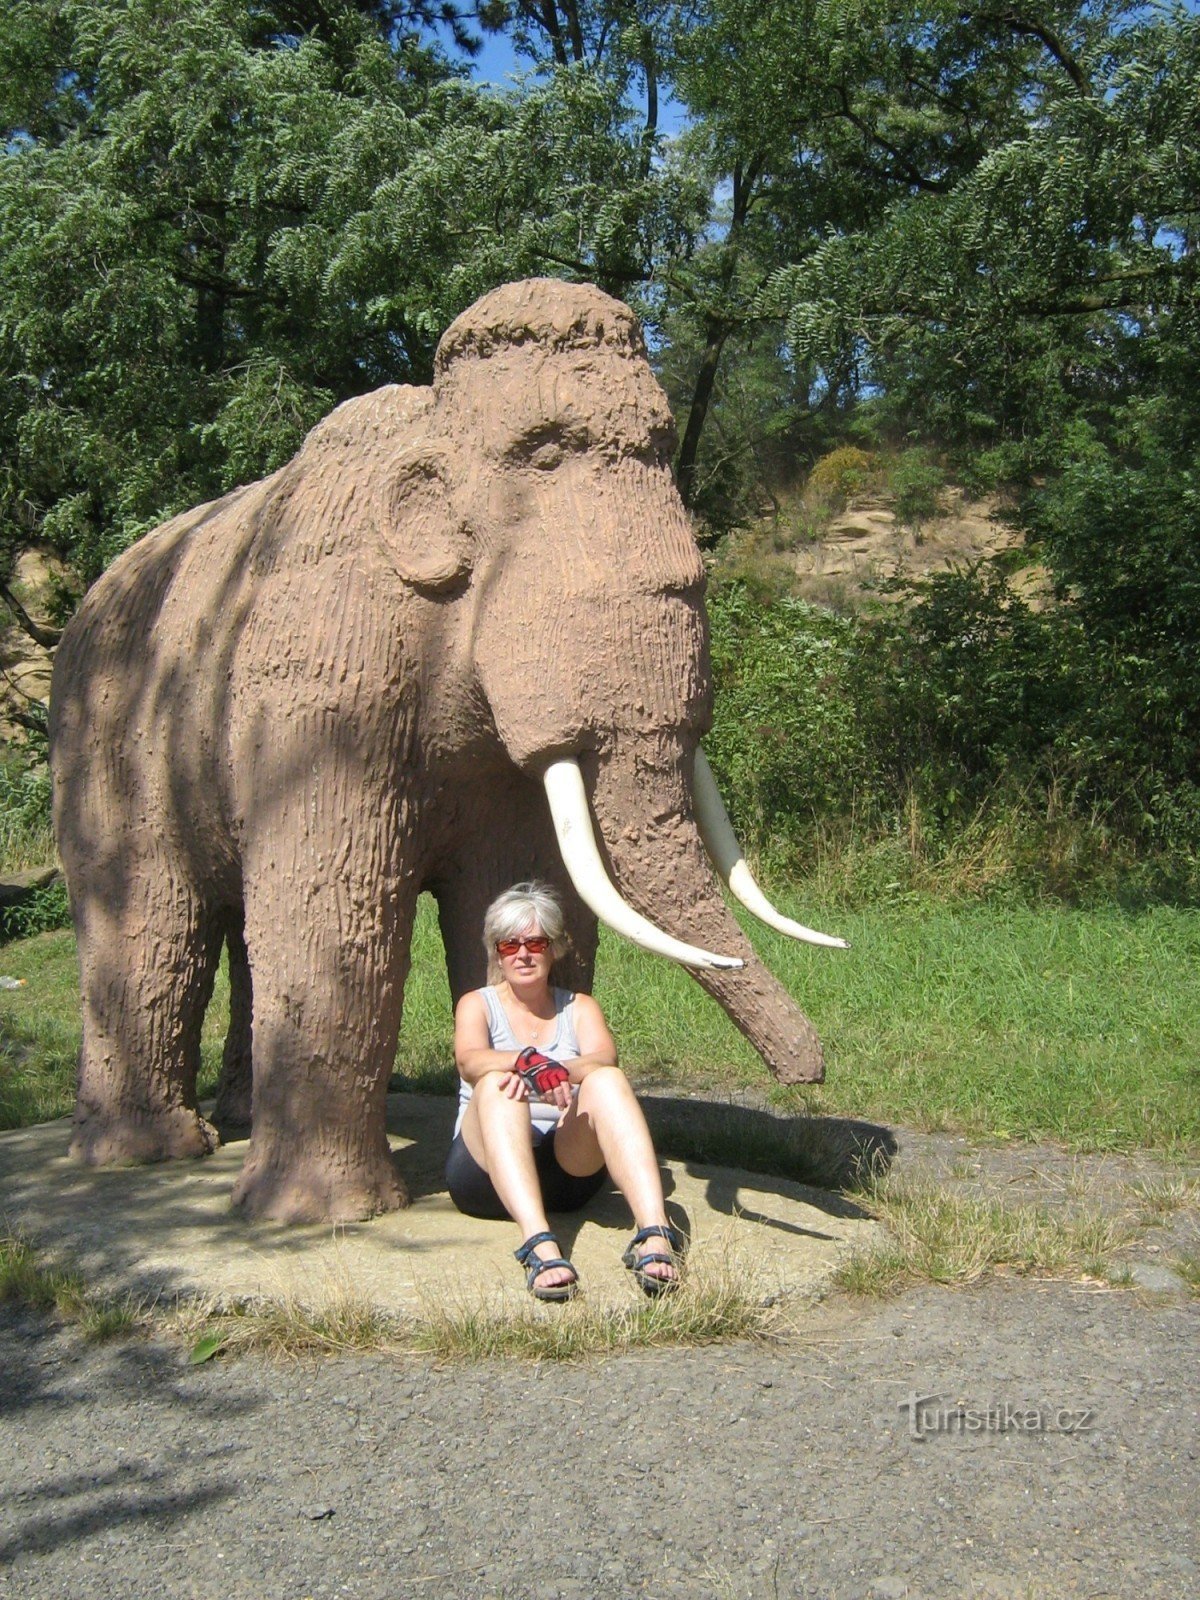 O sculptură mamut pe dealul Čekyňské